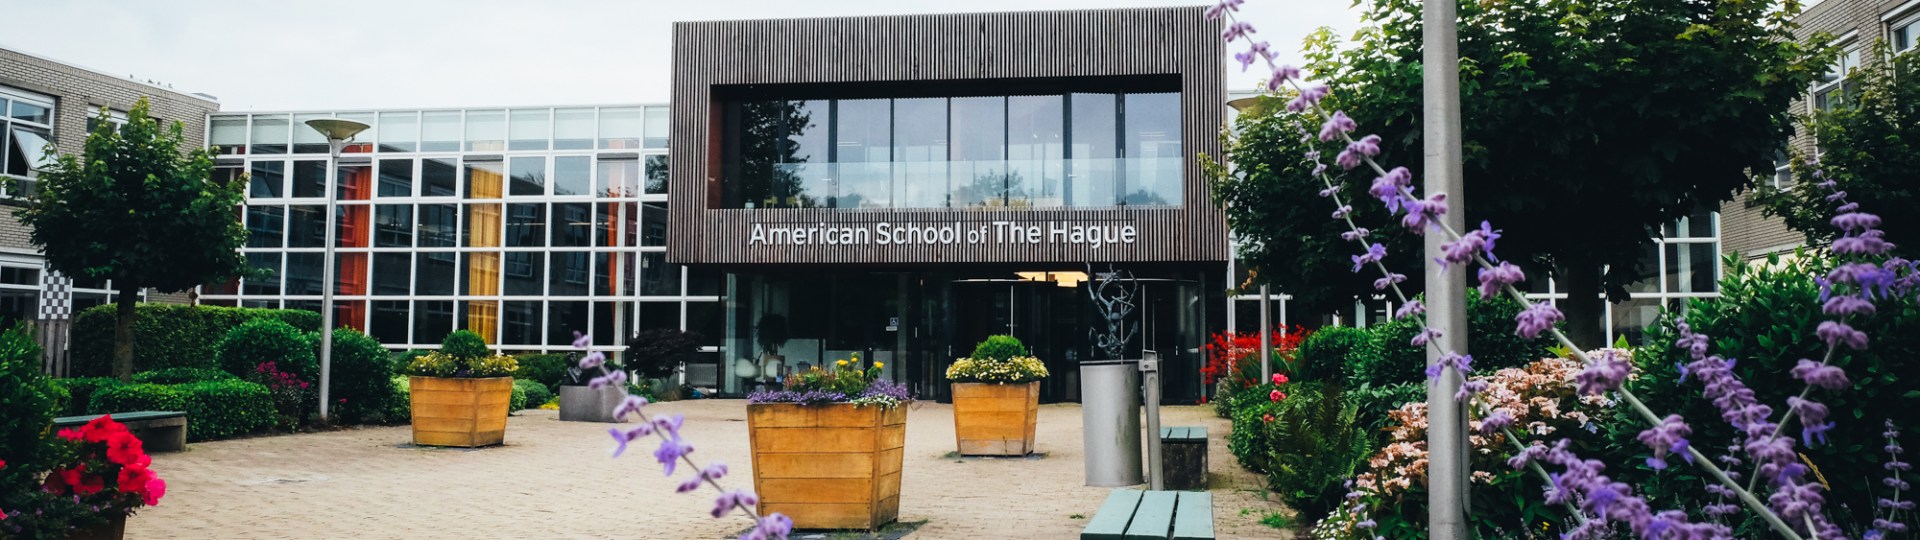 American School of The Hague American School of The Hague